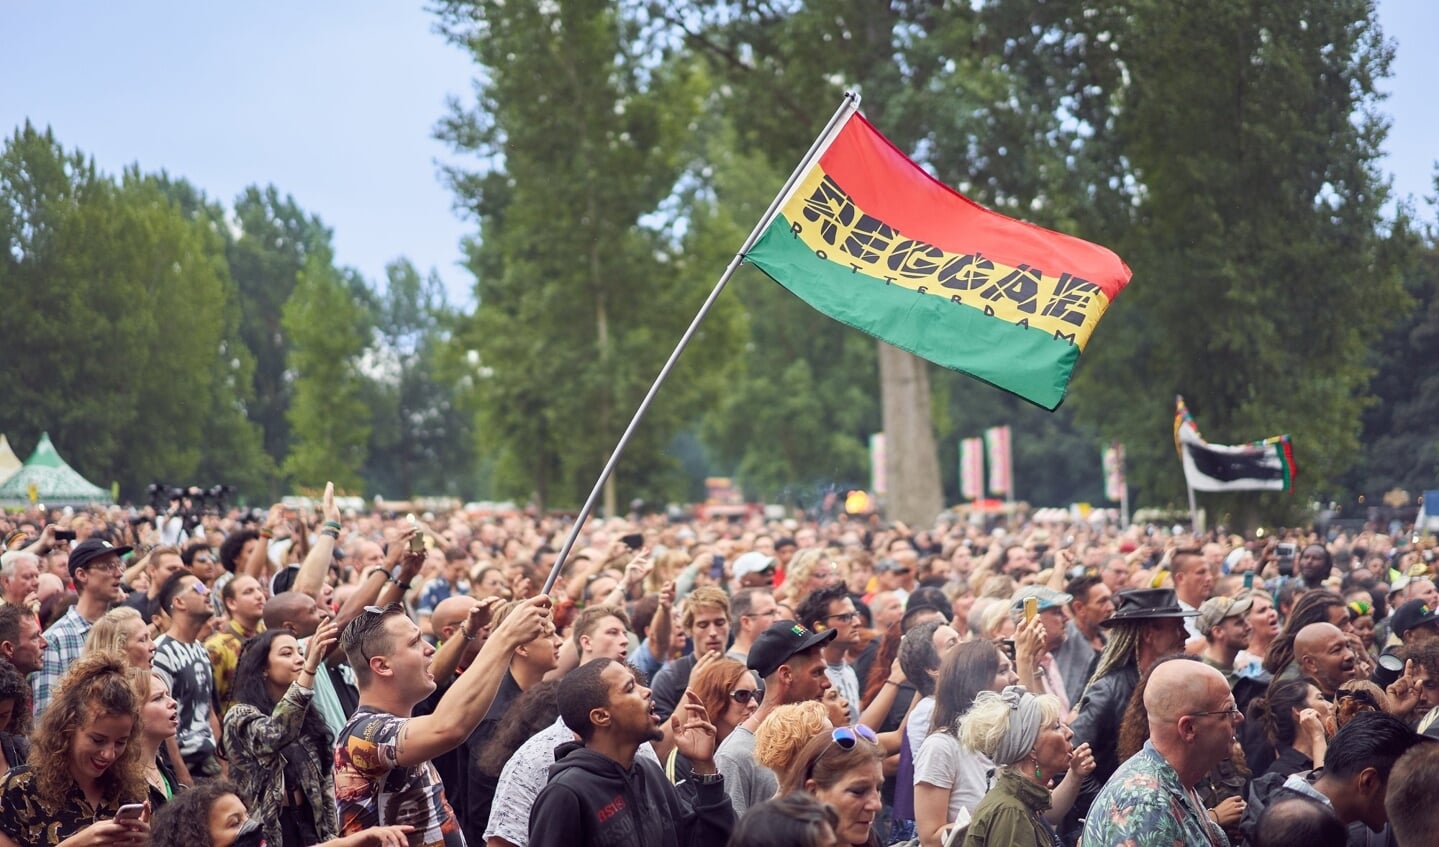 Het Reggae Festival in het Kralingse Bos gaat niet door. Archieffoto